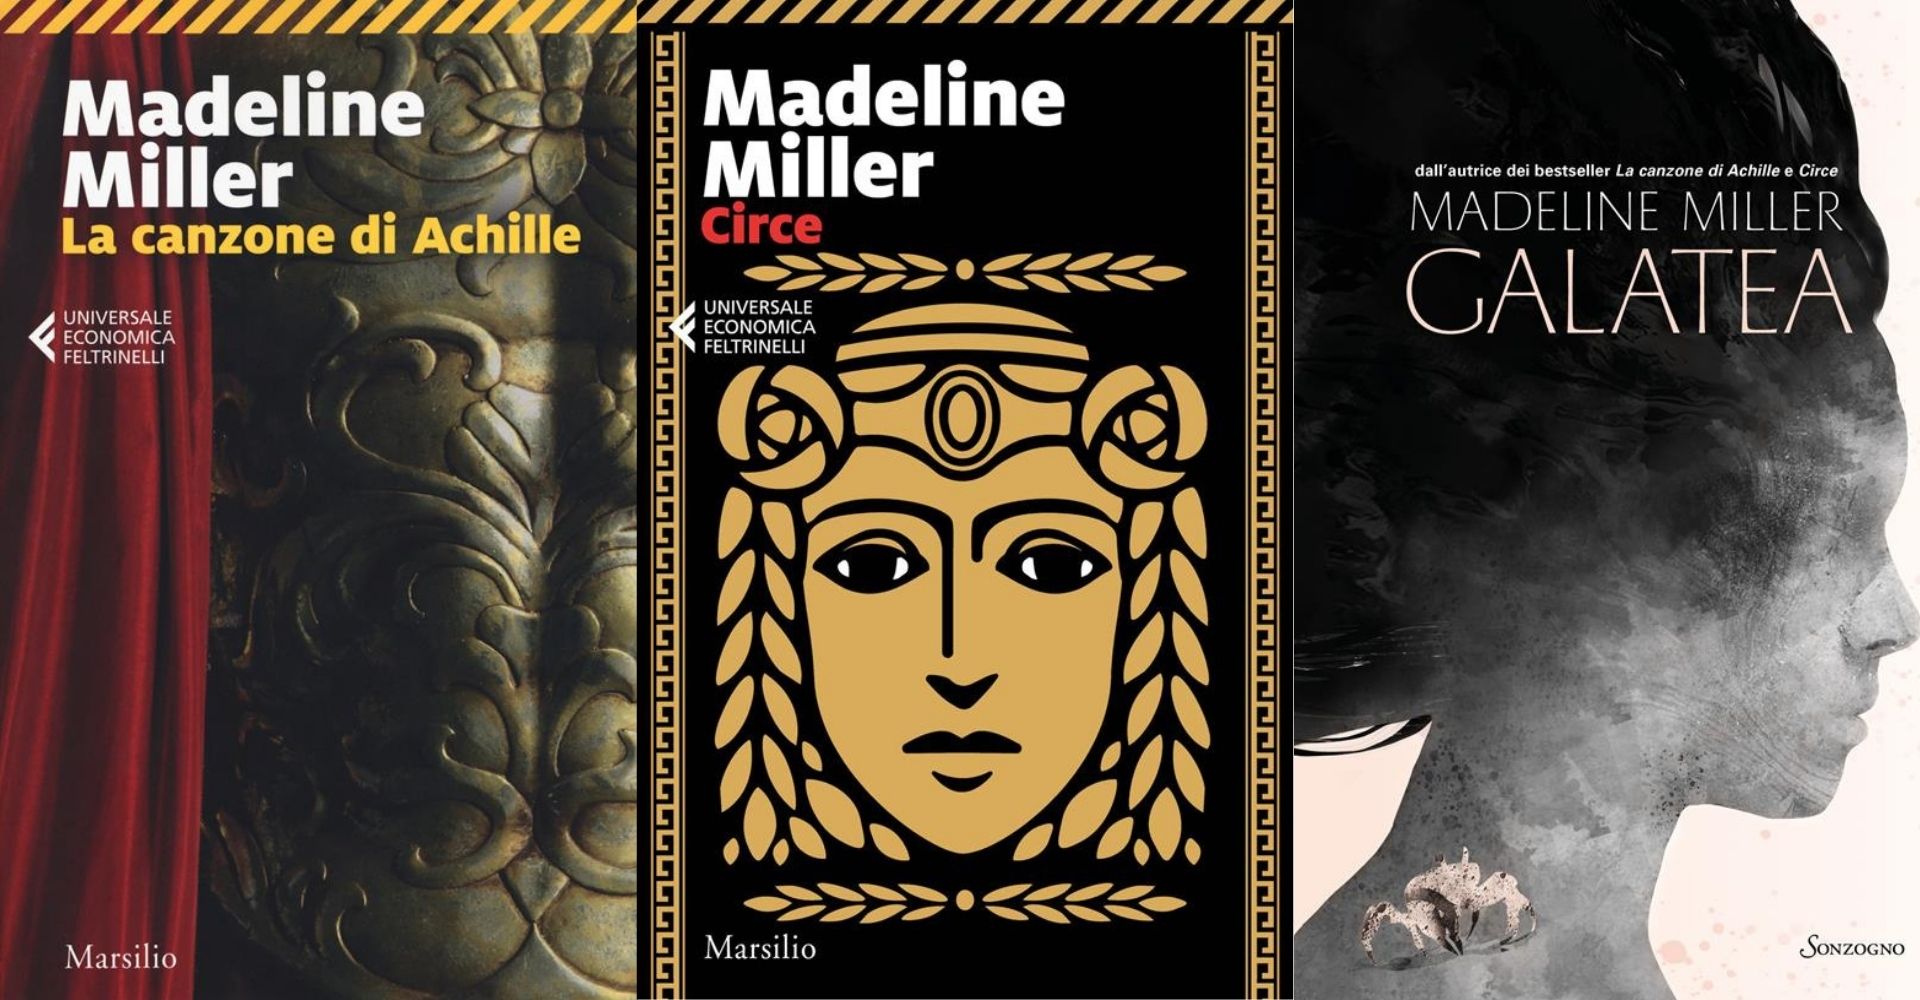 Chi è Madeline Miller, l'autrice che racconta i miti classici e che piace agli adolescenti